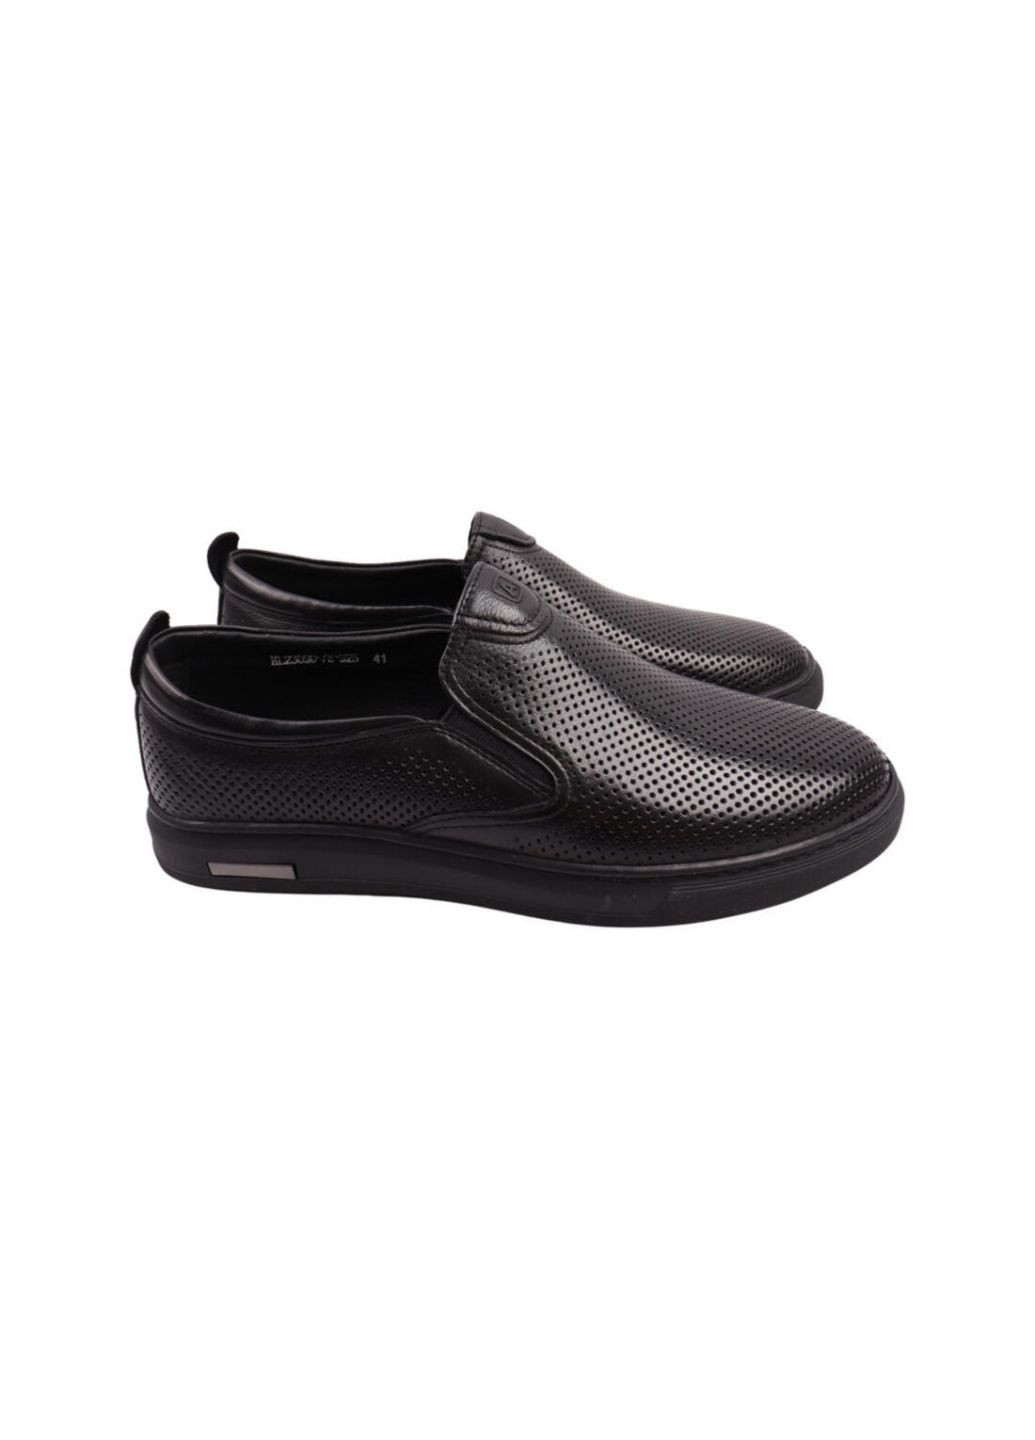 Черные туфли мужские черные натуральная кожа Anemone